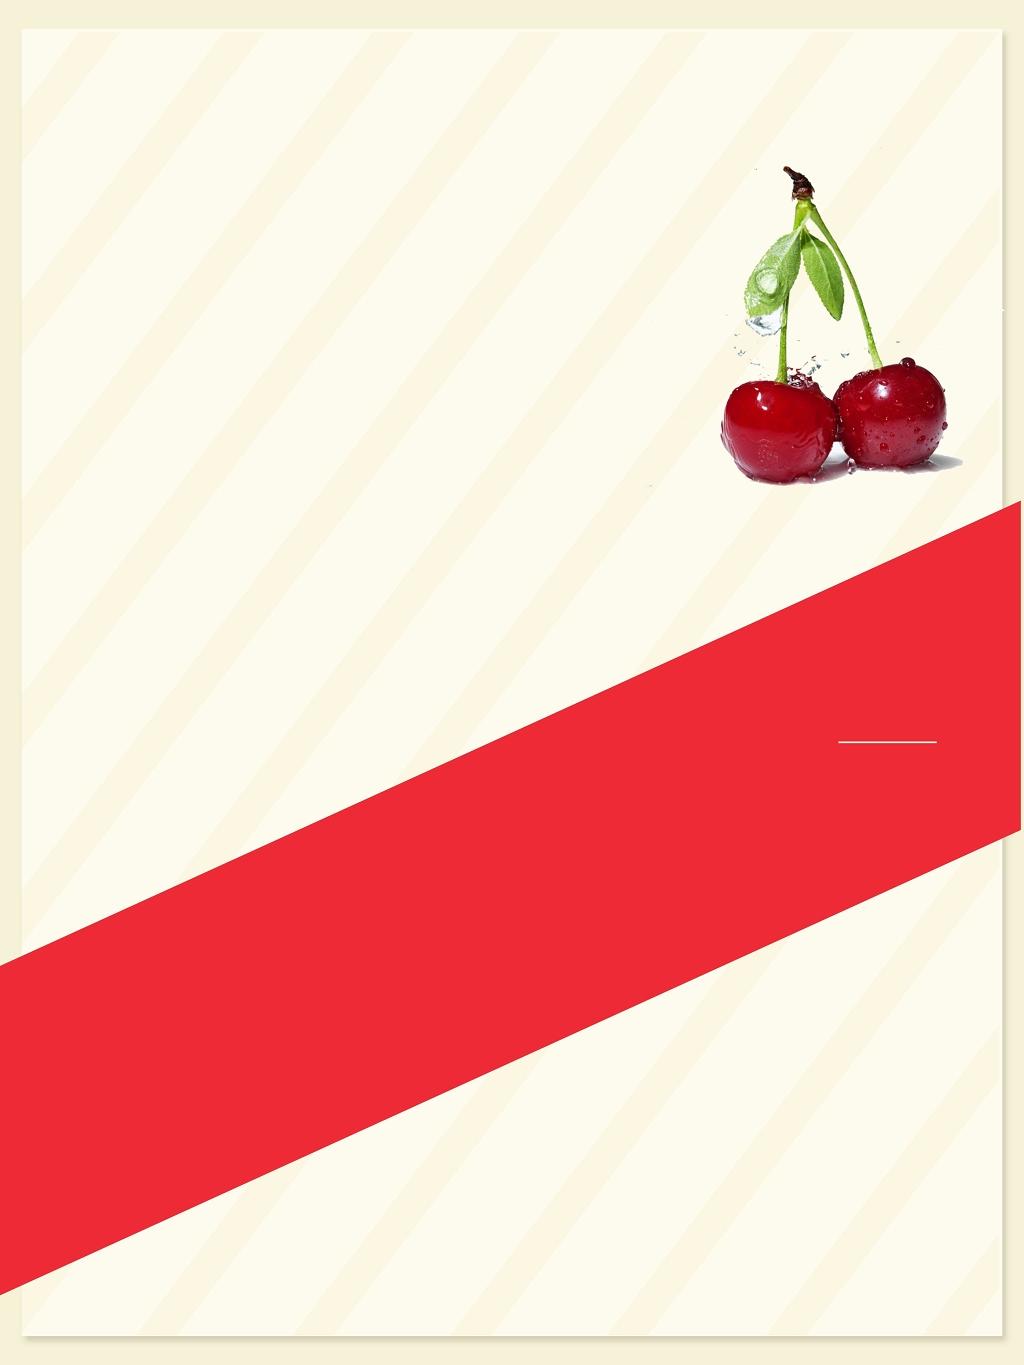 边框红白矩形纹理手绘绿叶清新樱桃车厘子水果海报背景